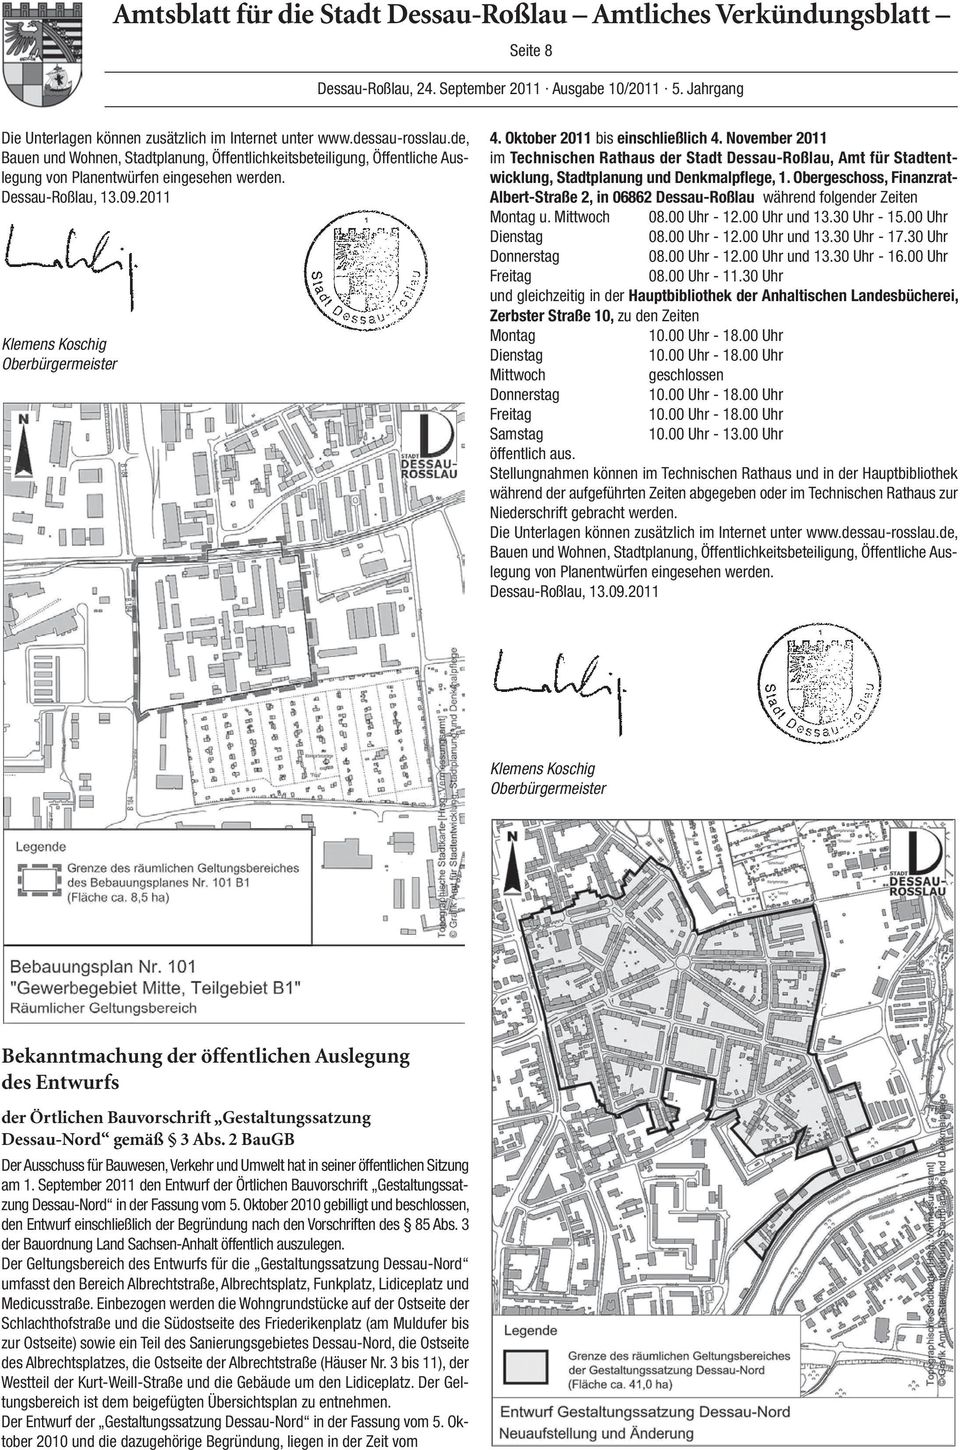 Oktober 2011 bis einschließlich 4. November 2011 im Technischen Rathaus der Stadt Dessau-Roßlau, Amt für Stadtentwicklung, Stadtplanung und Denkmalpflege, 1.